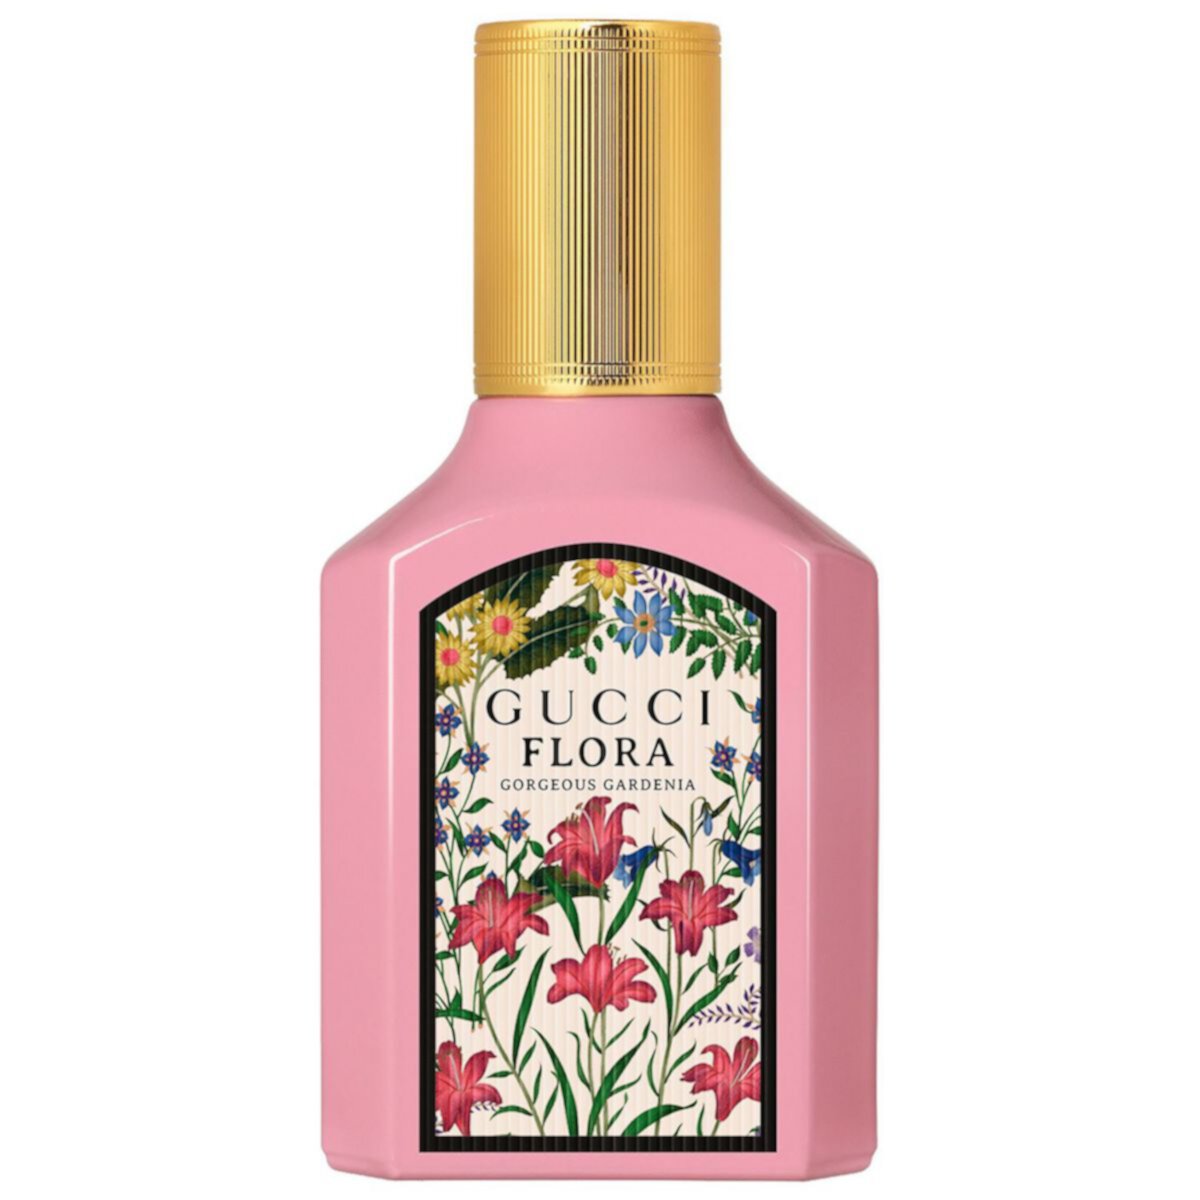 Gucci Flora Gorgeous Gardenia Eau de Parfum GUCCI